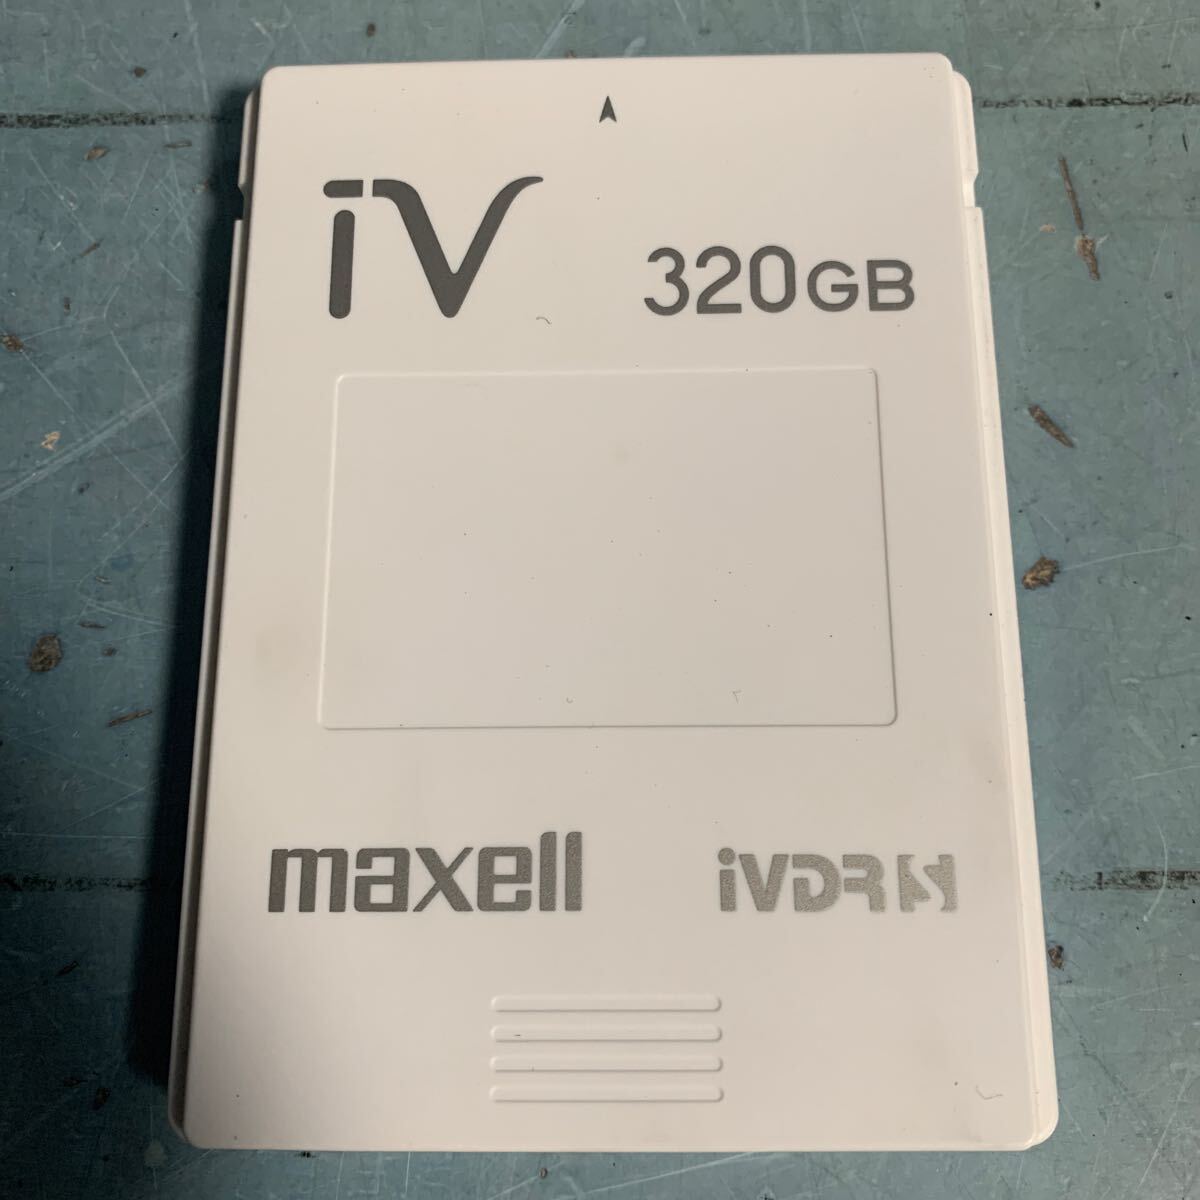 maxell iv 320GB maxell ハードディスクIVDR ケース付き (9421)_画像2